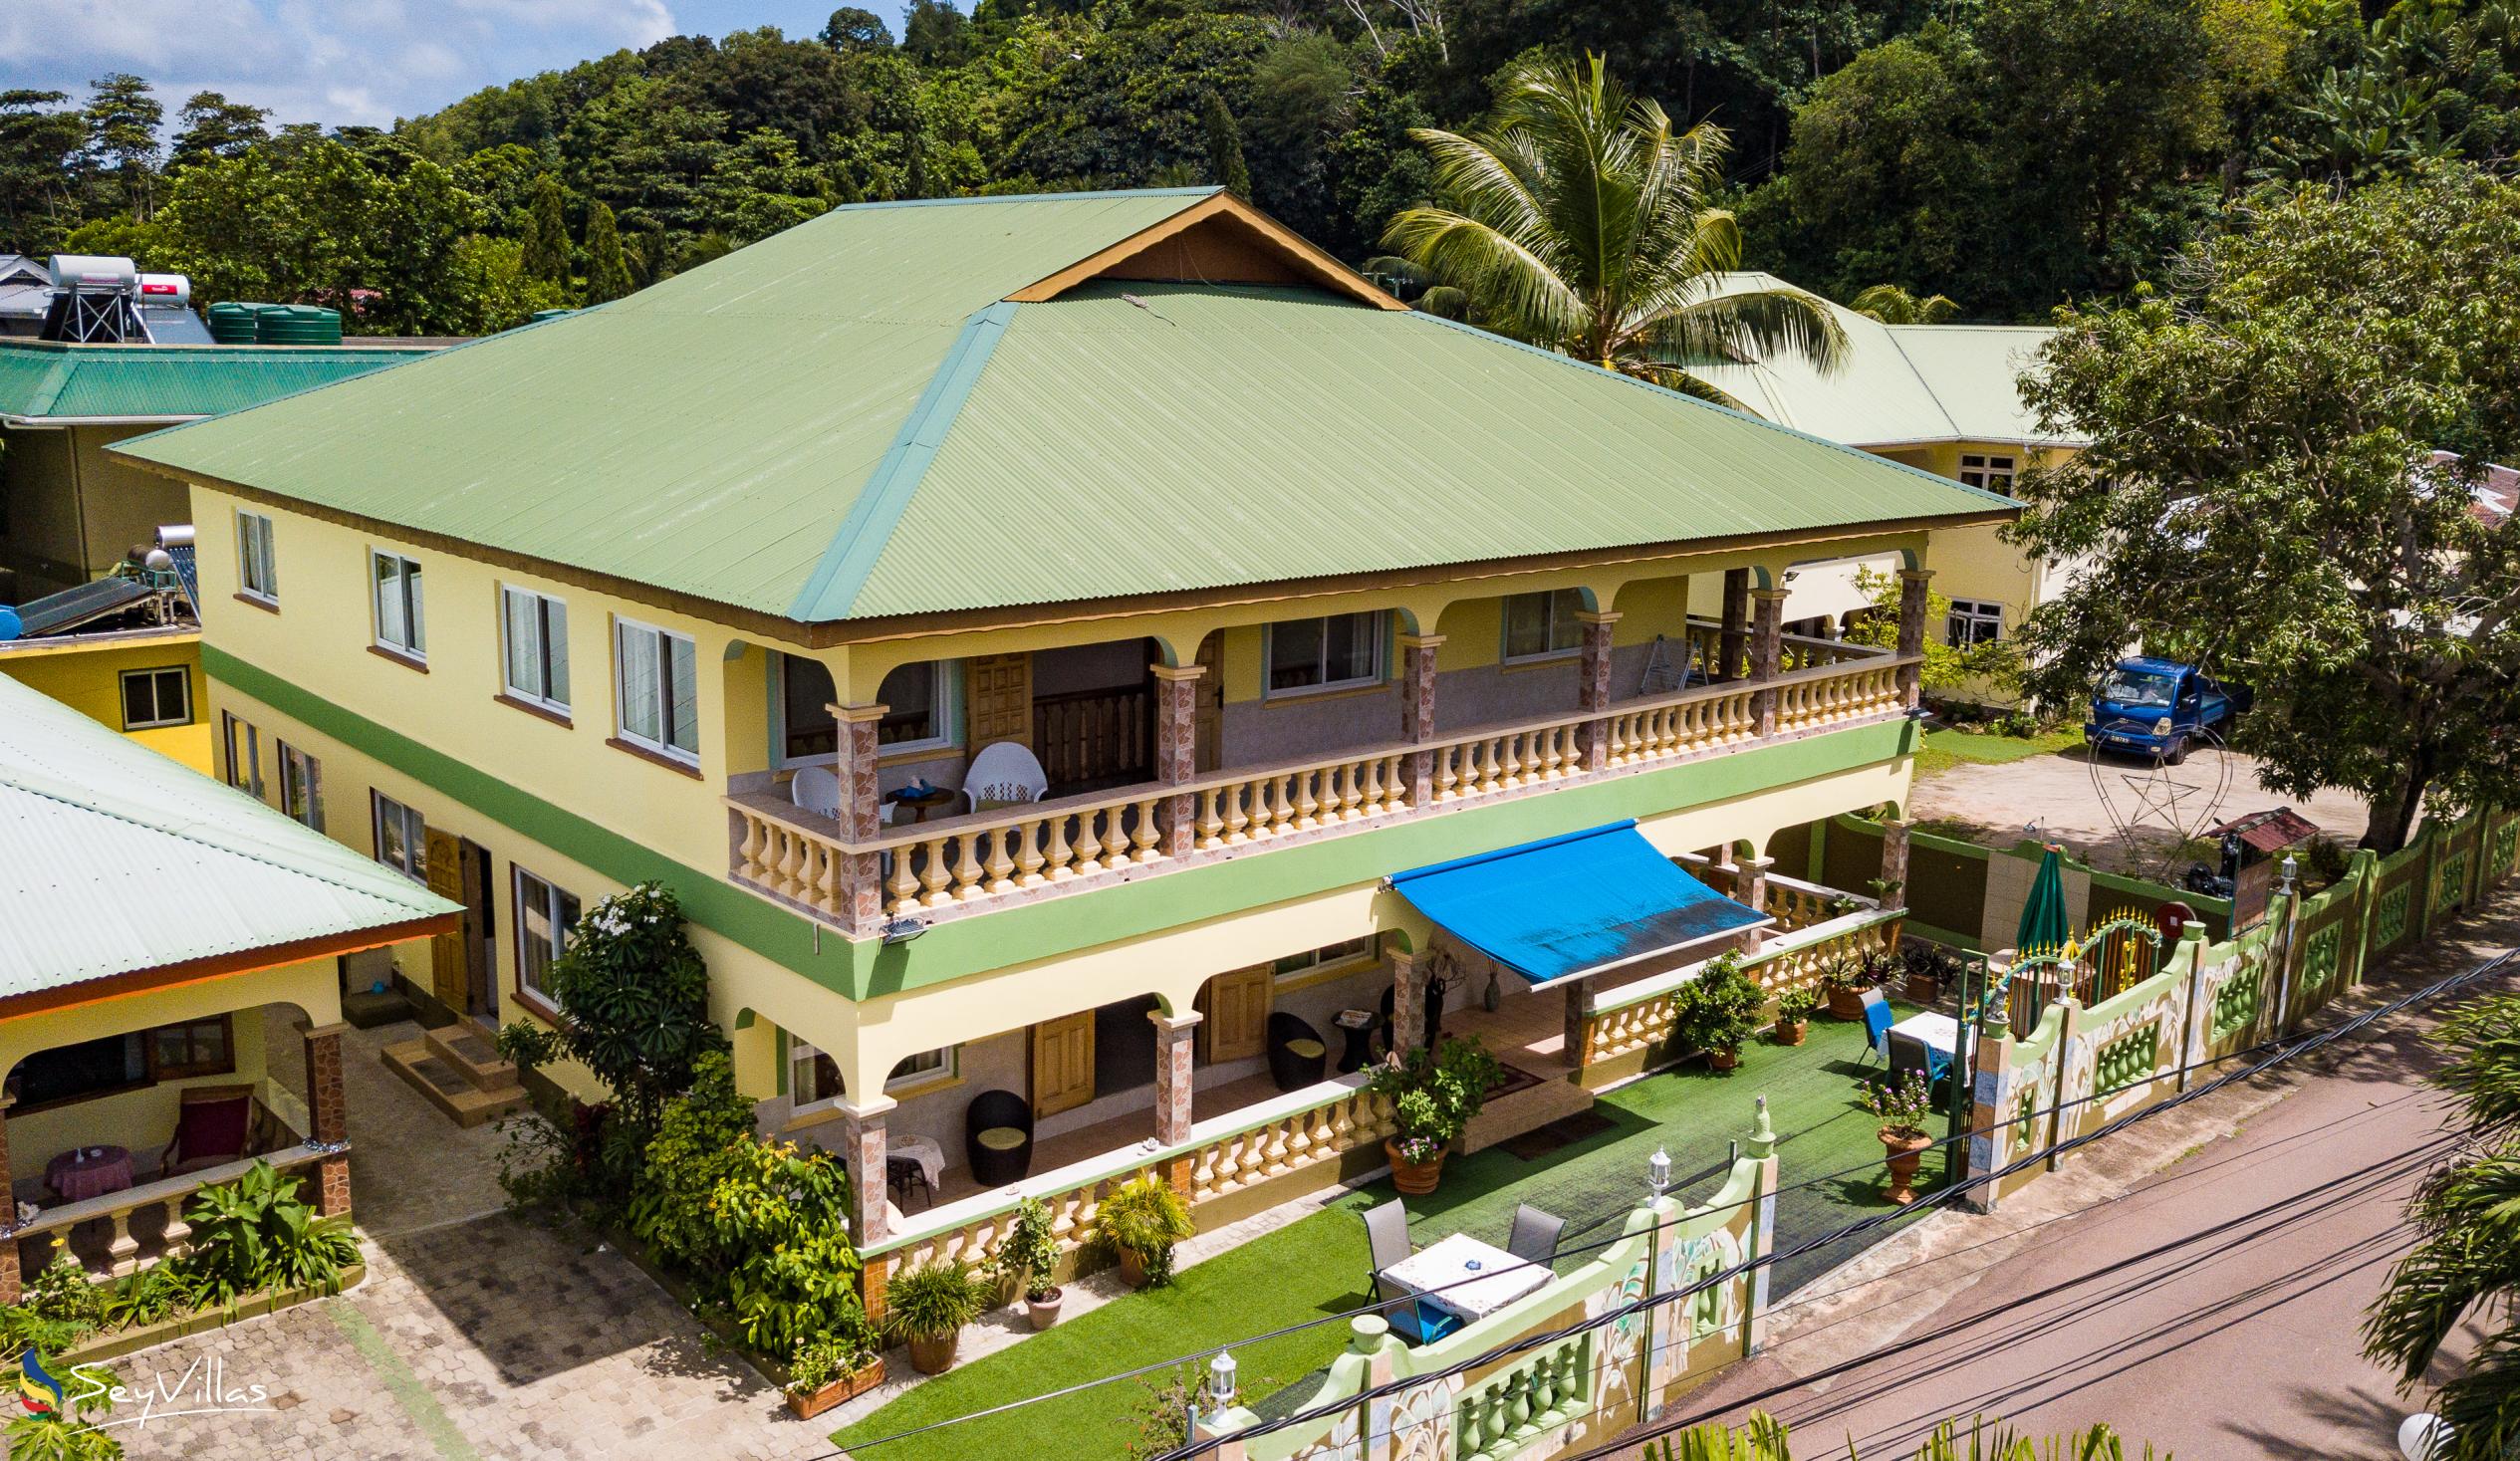 Foto 23: Villa Bananier - Aussenbereich - Praslin (Seychellen)